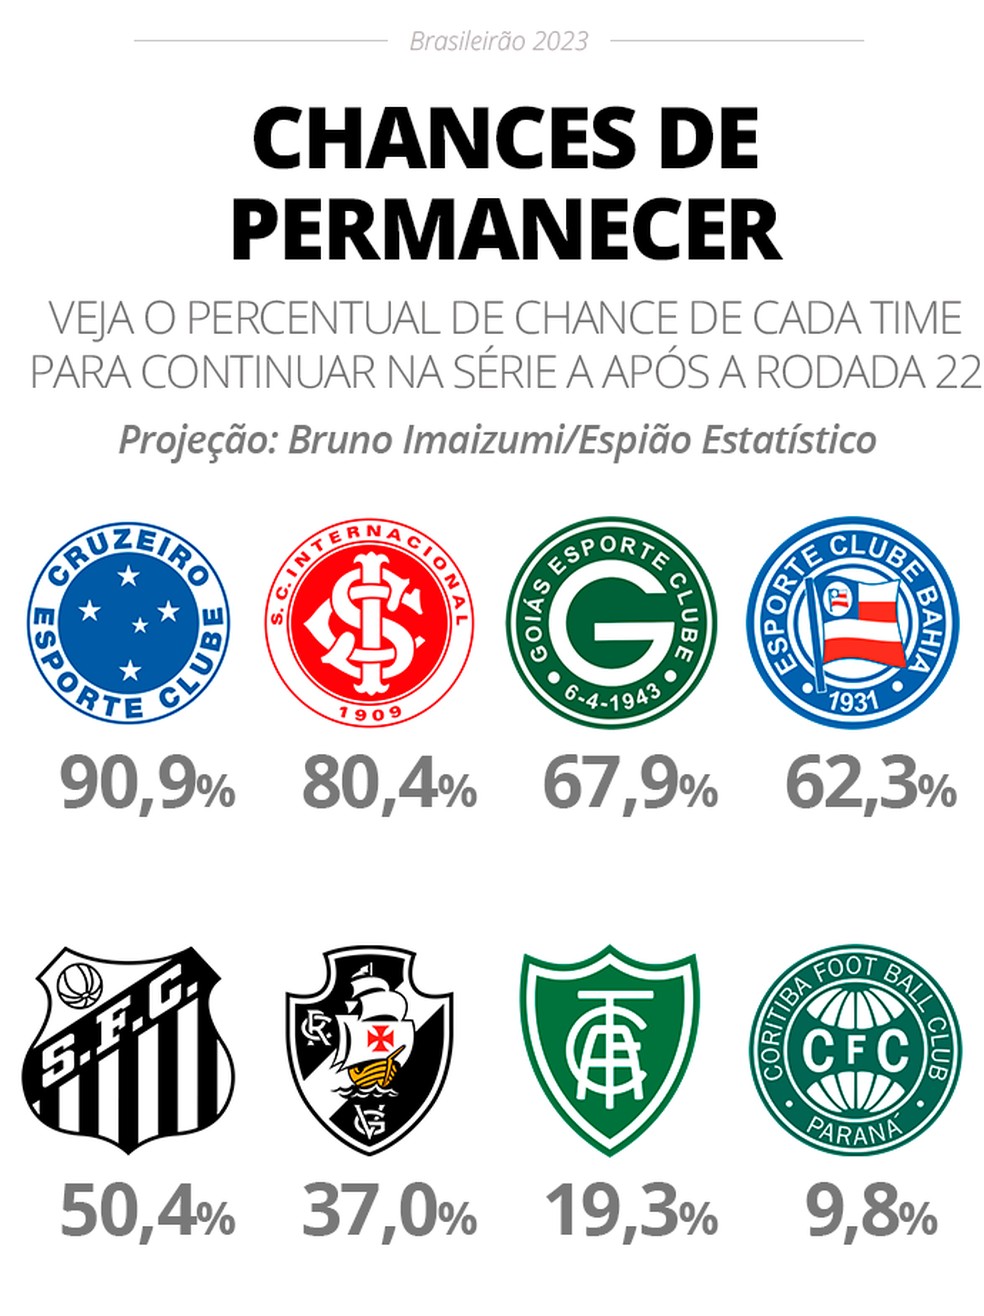 Confira a sequência de jogos do Palmeiras no Brasileirão 2023